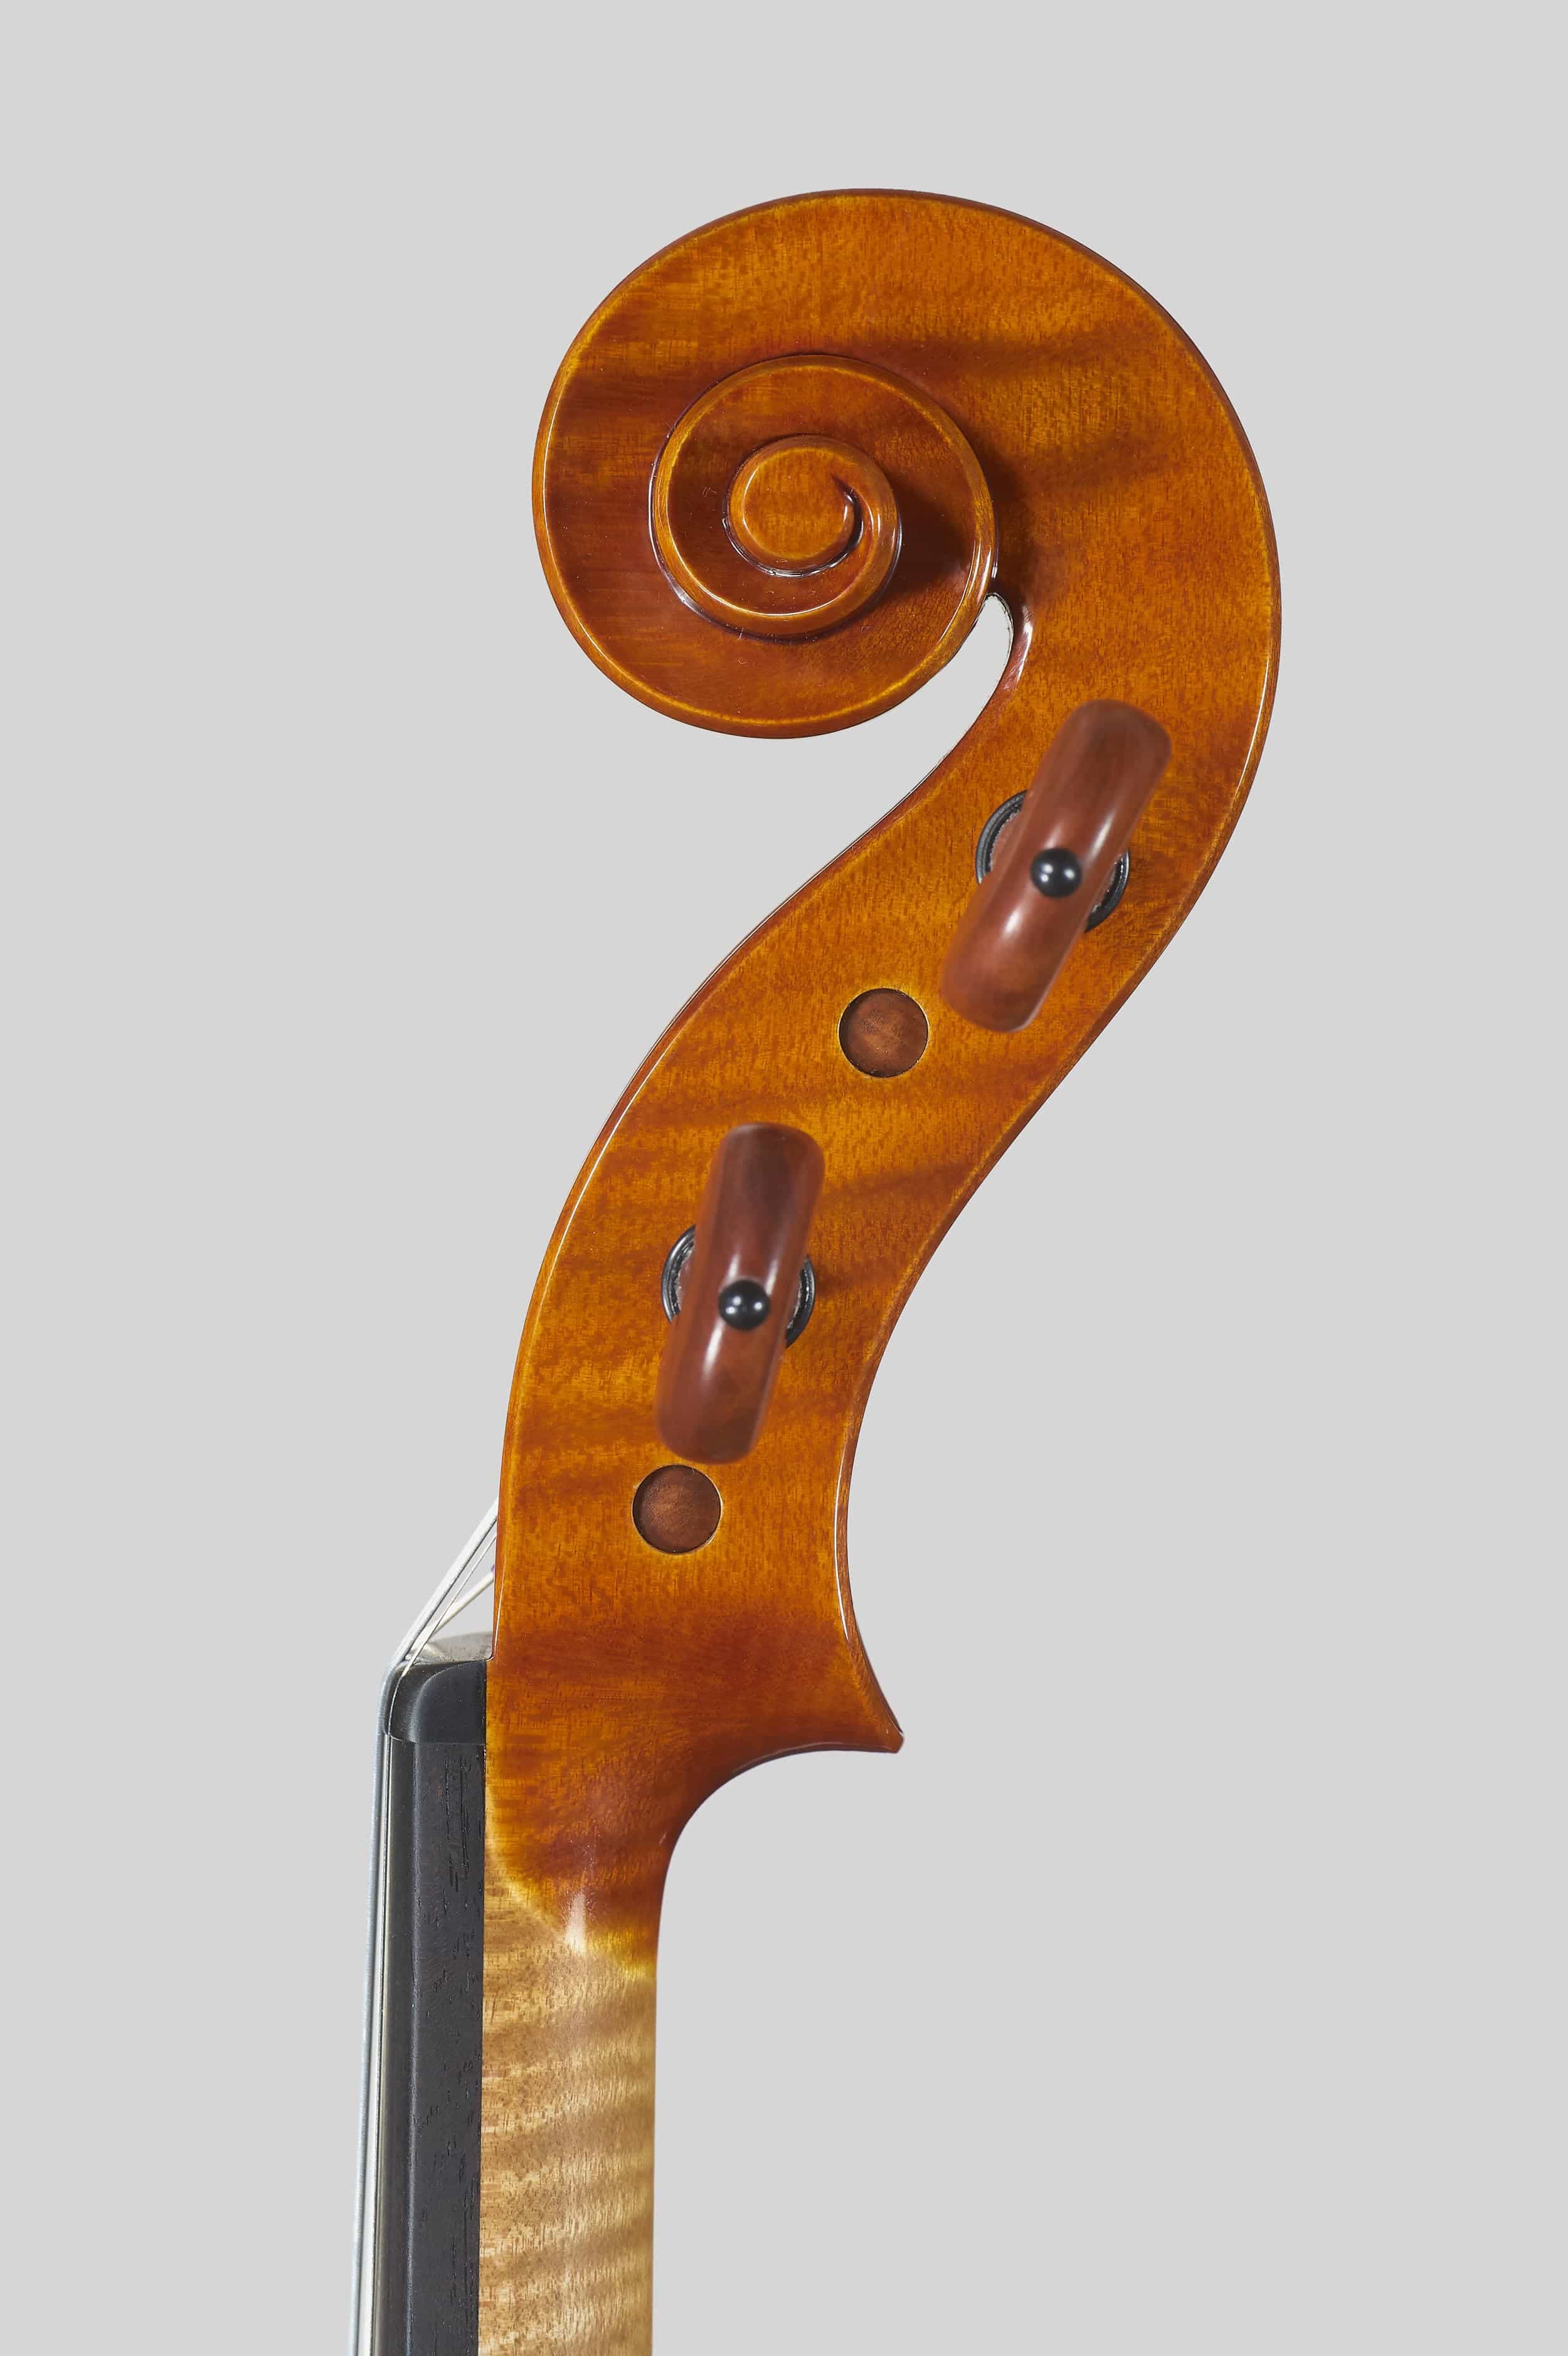 Anno 2017 - Violino modello stile A. Stradivari “Viotti” 1709 - Testa sinistra